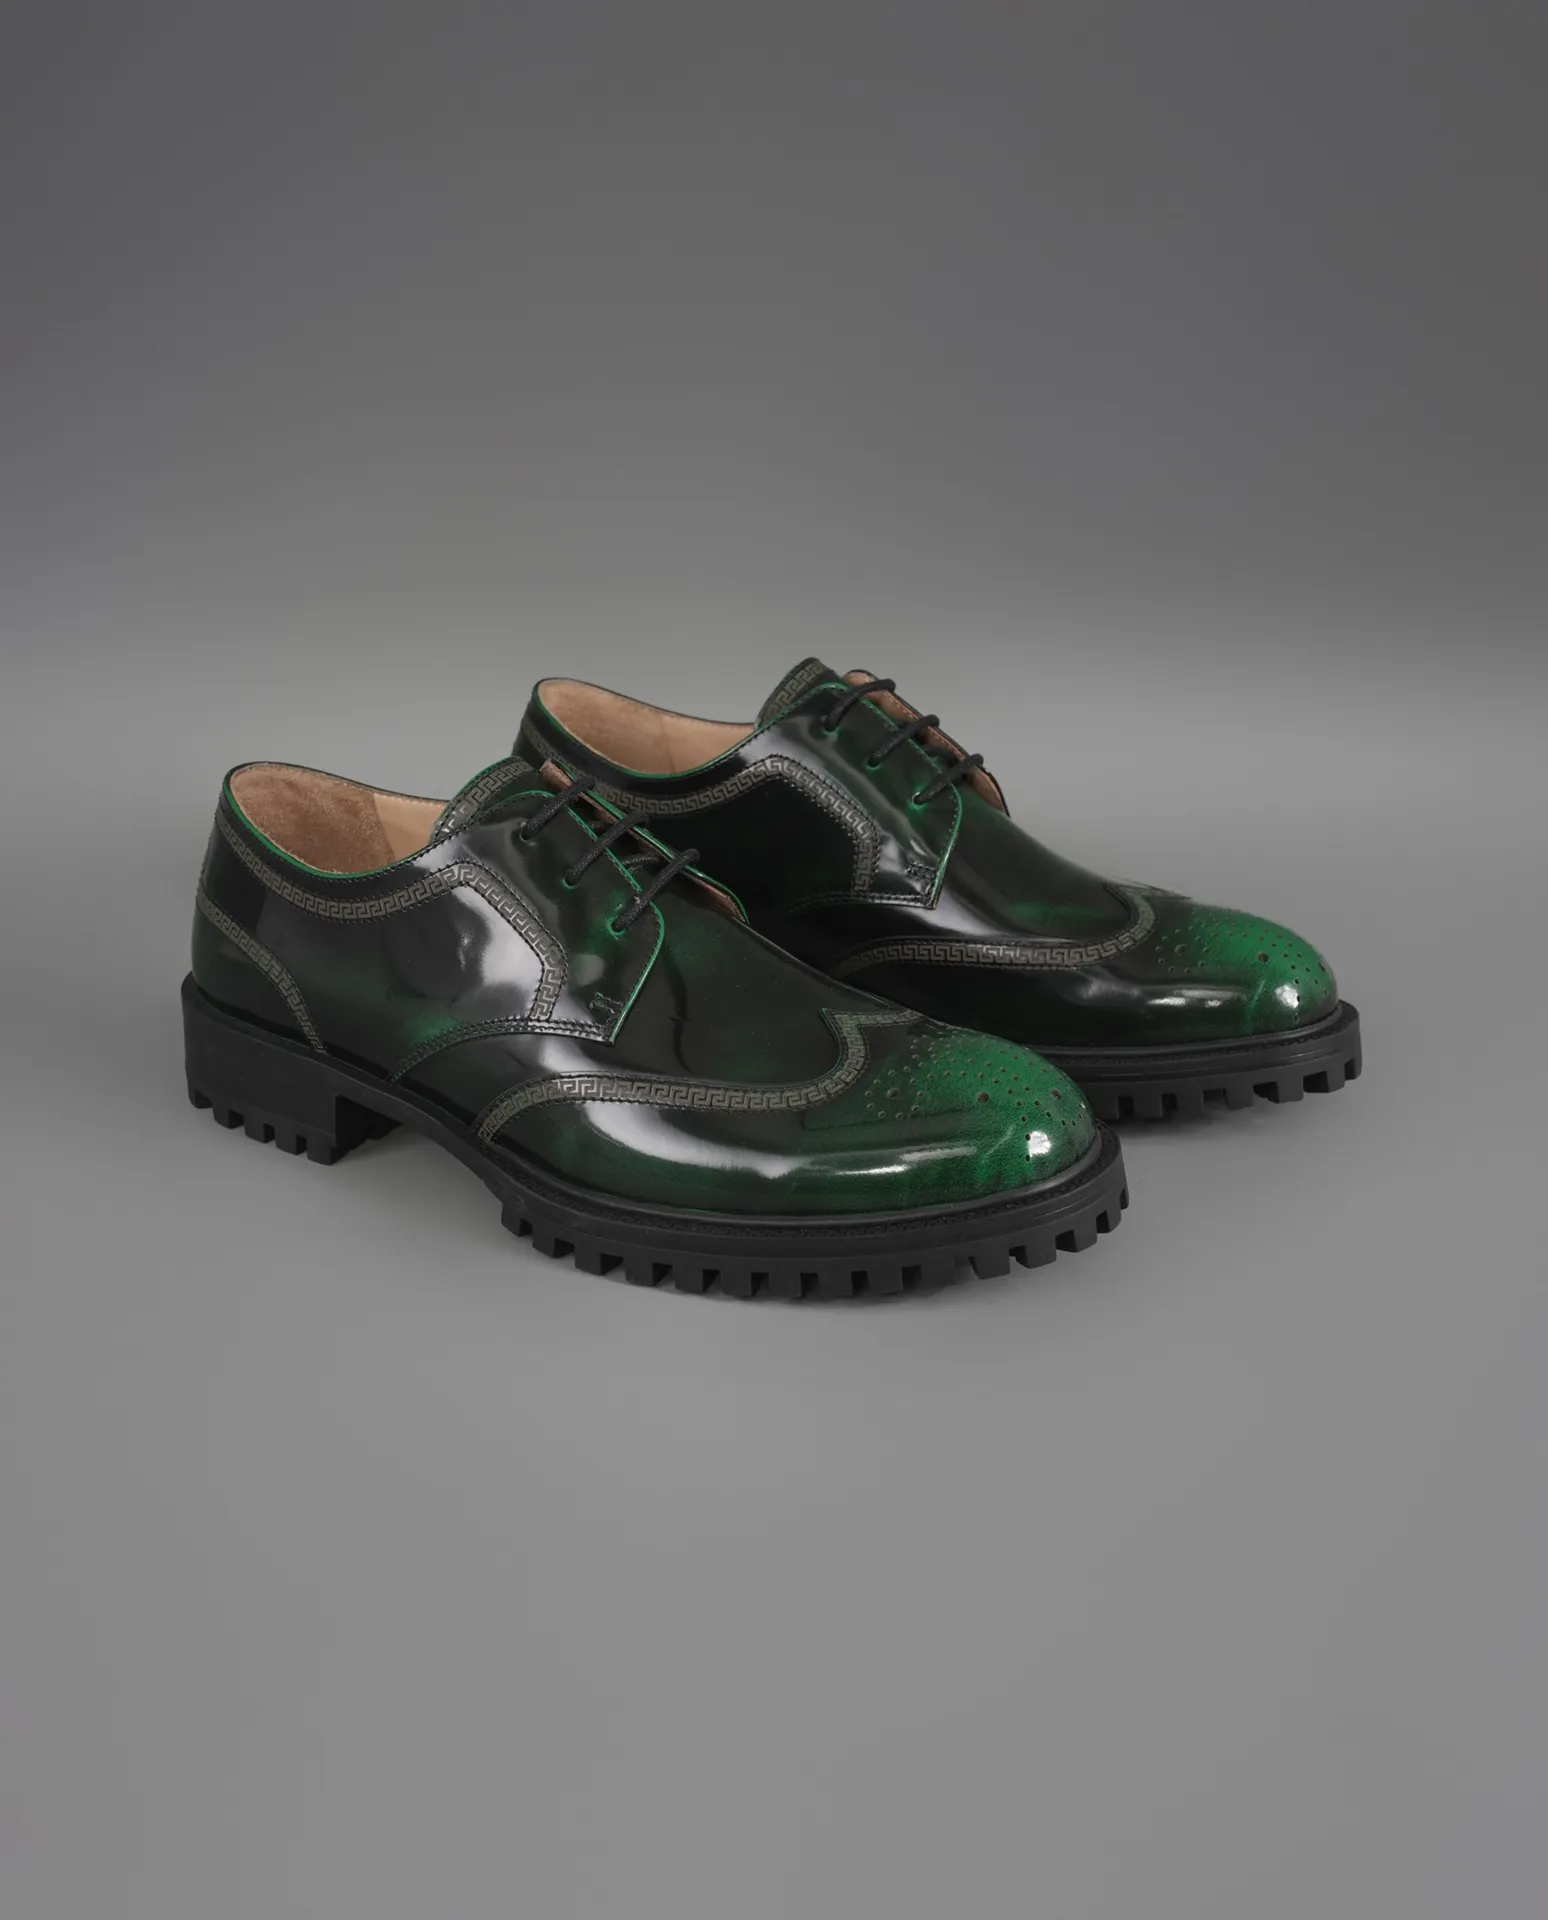 الموضات الجديدة الجميلة المصمم للرجال الفاخرة المتسكعون أحذية ~ قم بتصميم Mens Designer متسكعون عالية الجودة أحذية الاتحاد الأوروبي الحجم 39-45